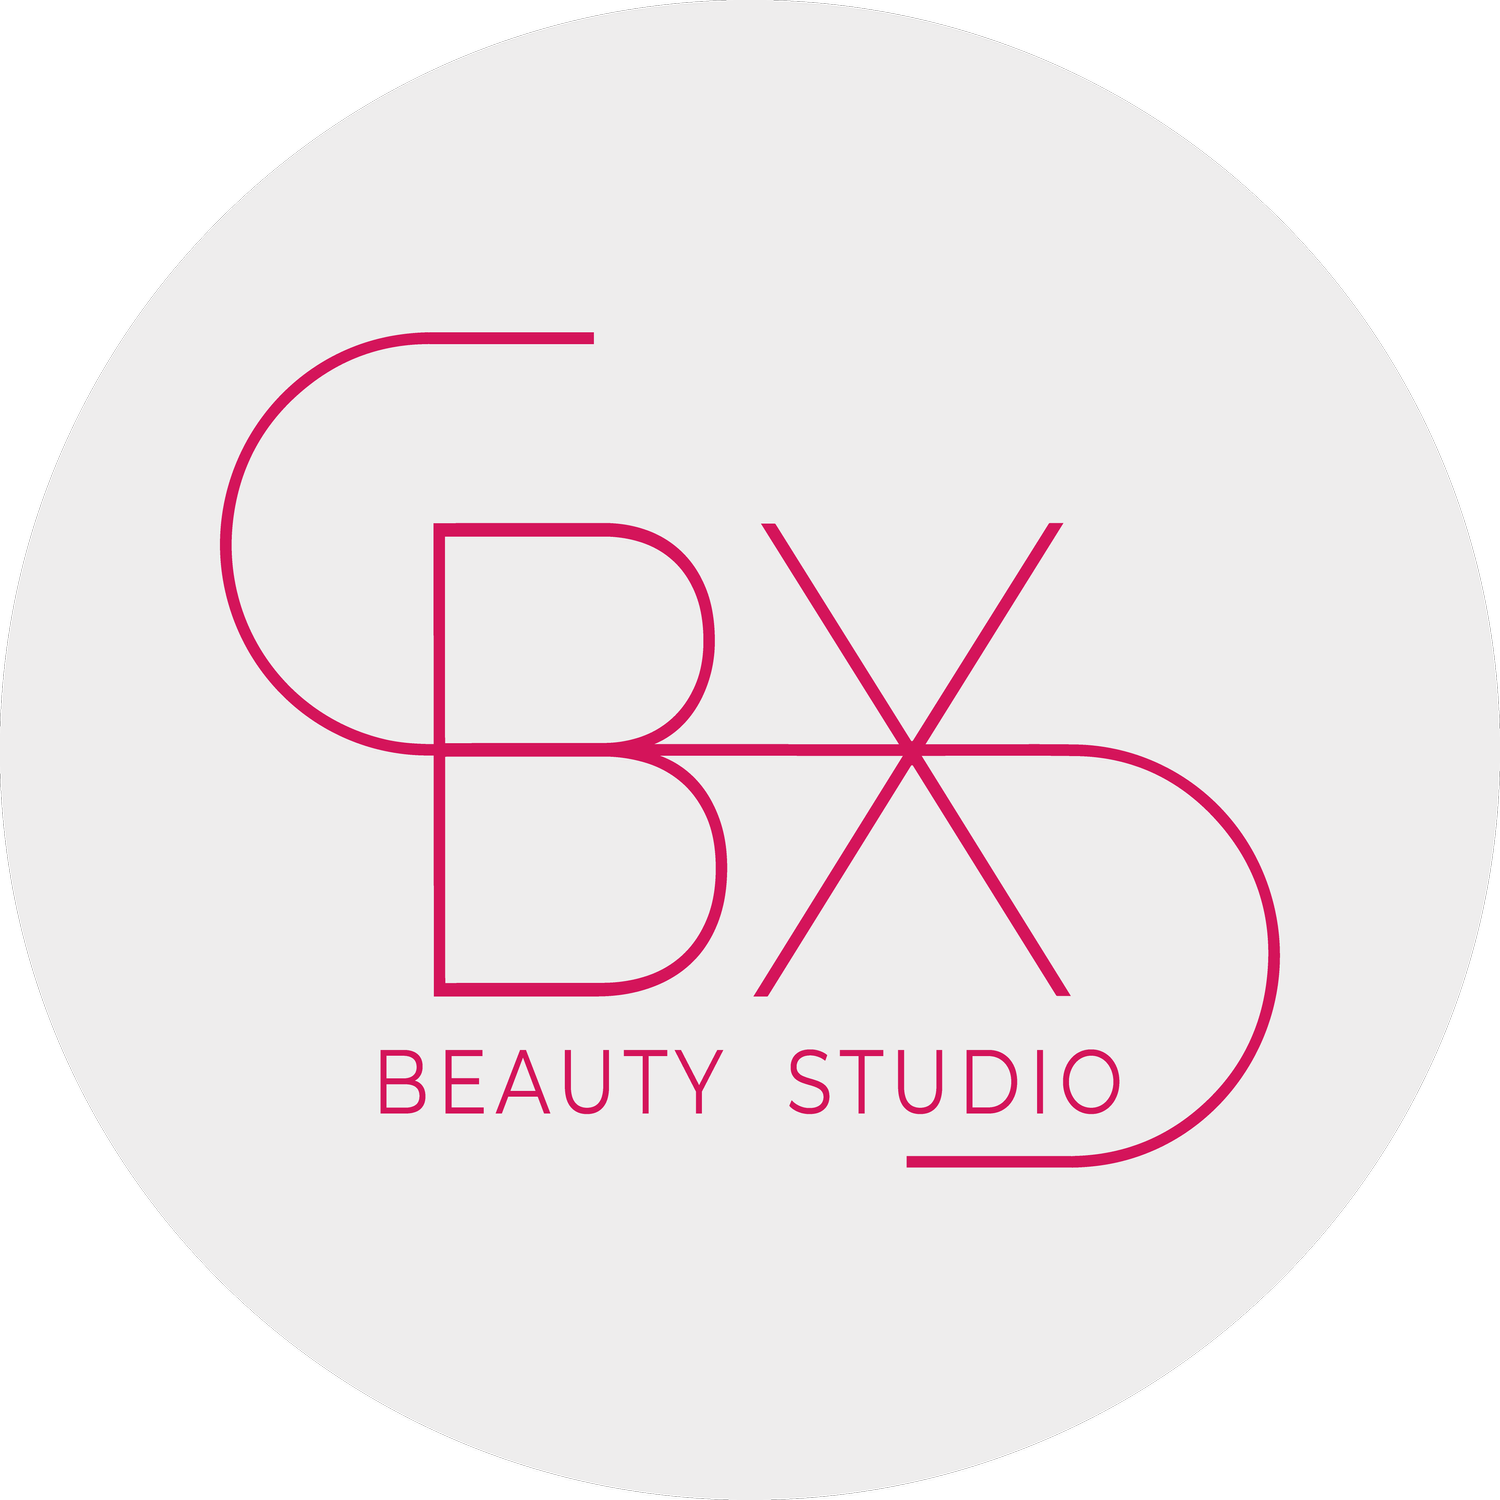 SBX Studio